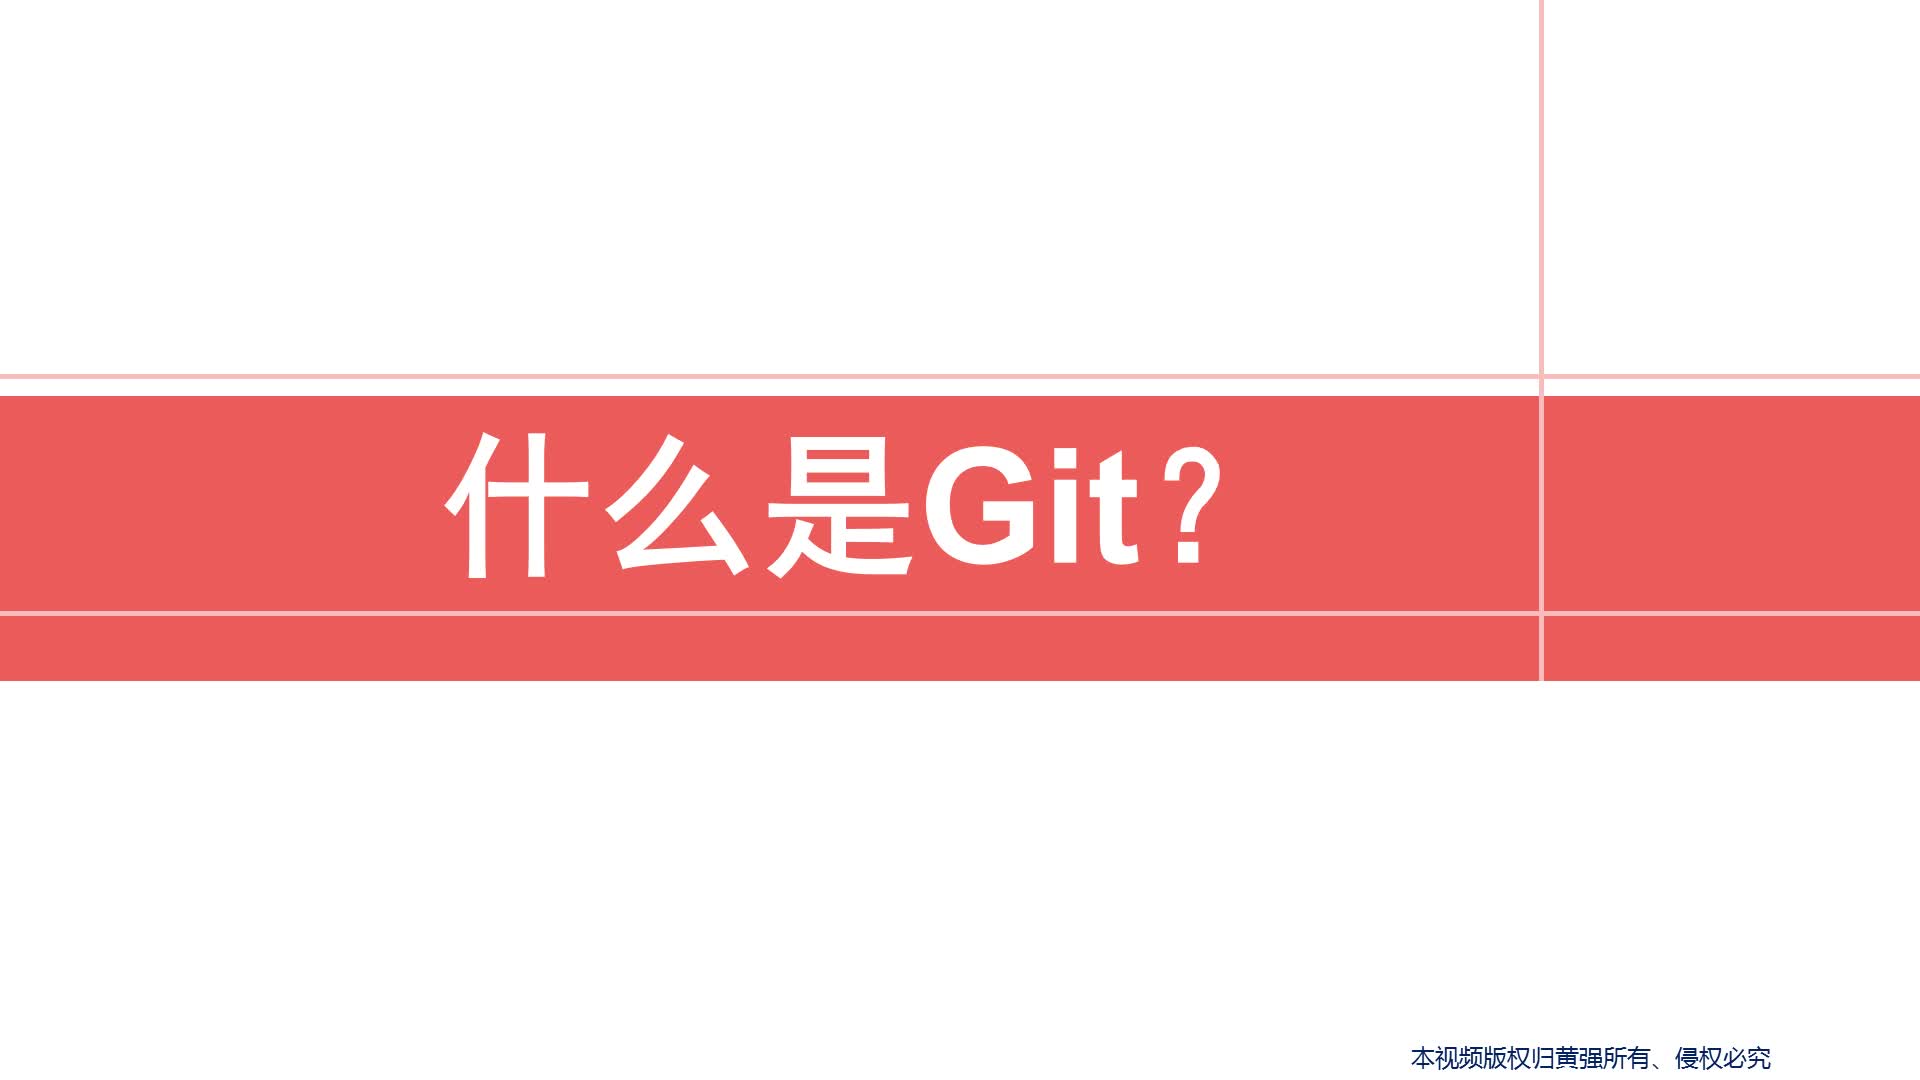 30分钟学会Git